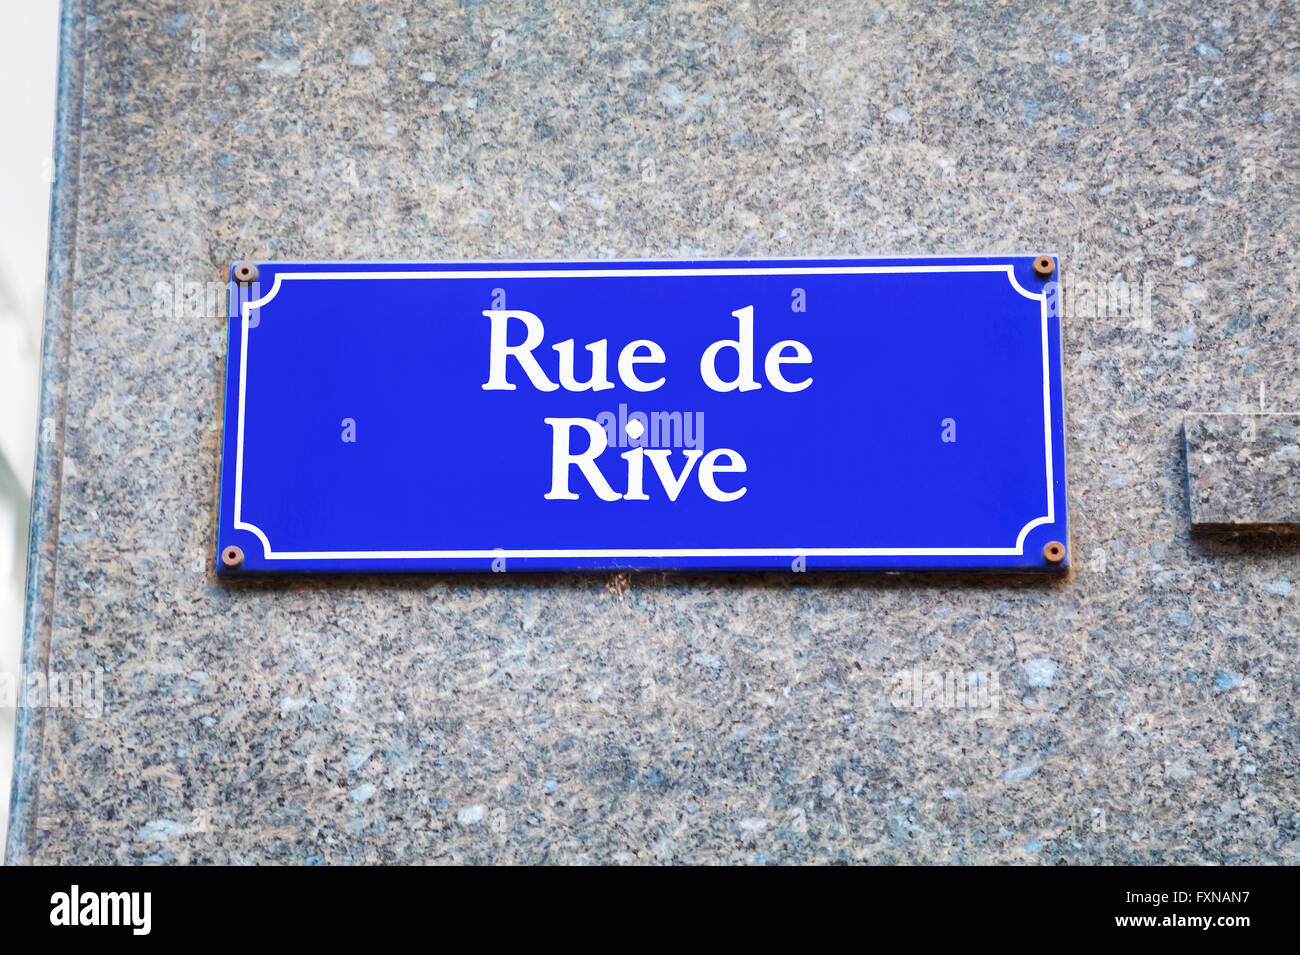 Rue de Rive street sign in Geneva, Switzerland Stock Photo